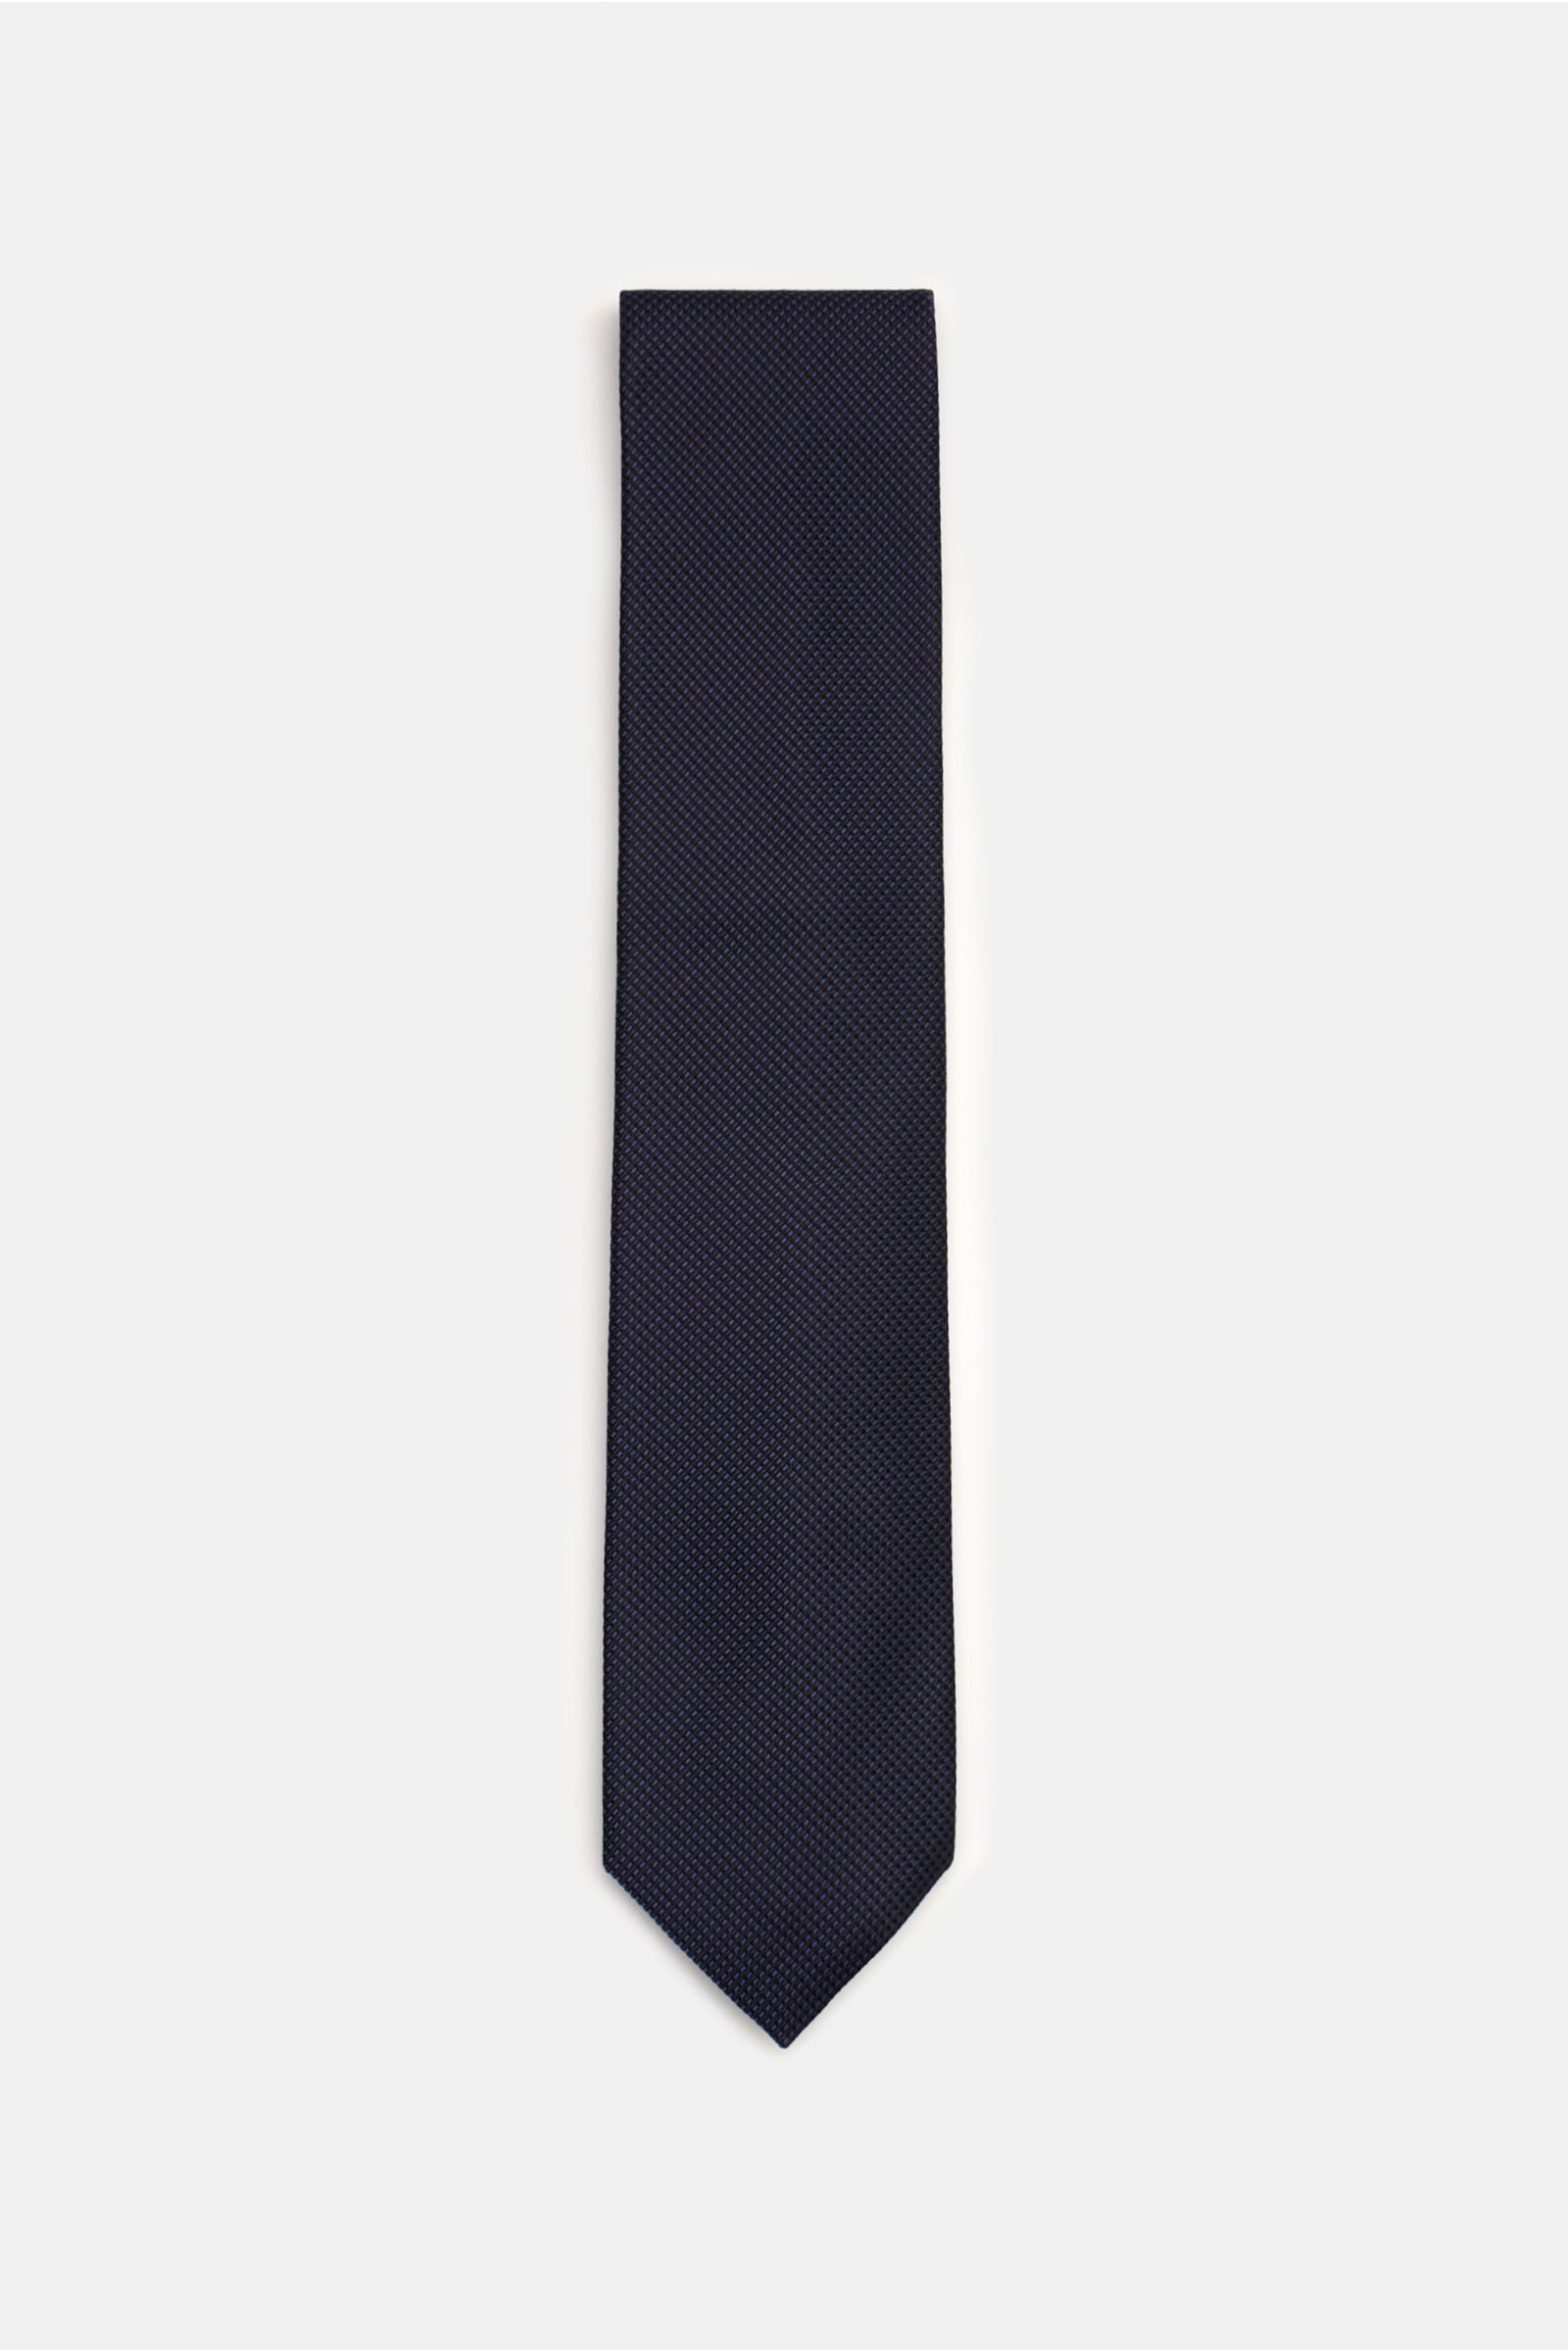 Silk tie navy/dark blue